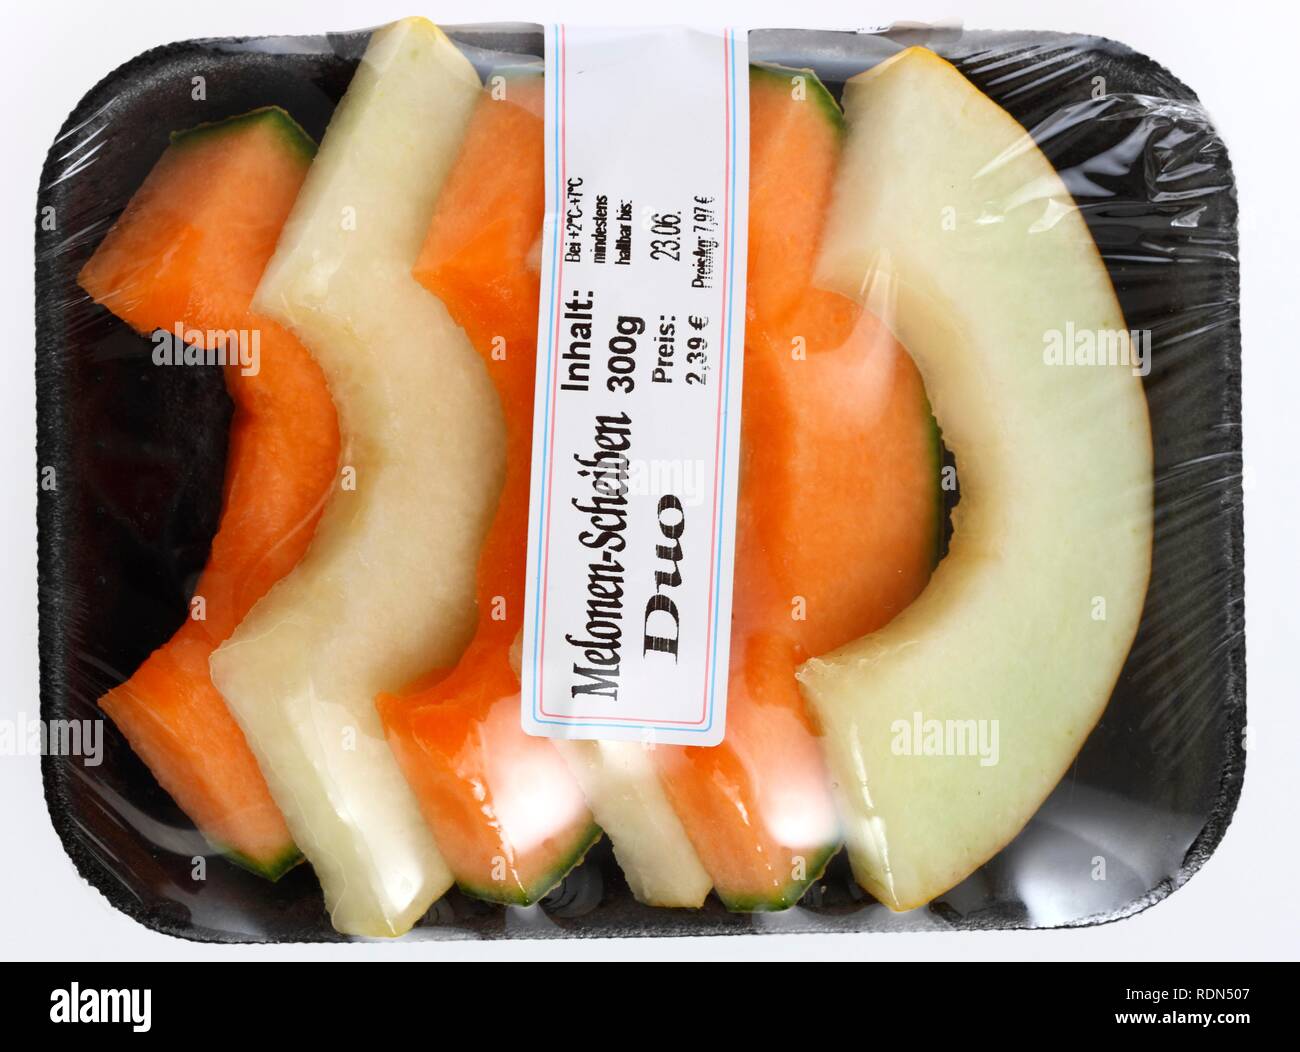 Tranches de melon, emballés pour consommation immédiate Banque D'Images